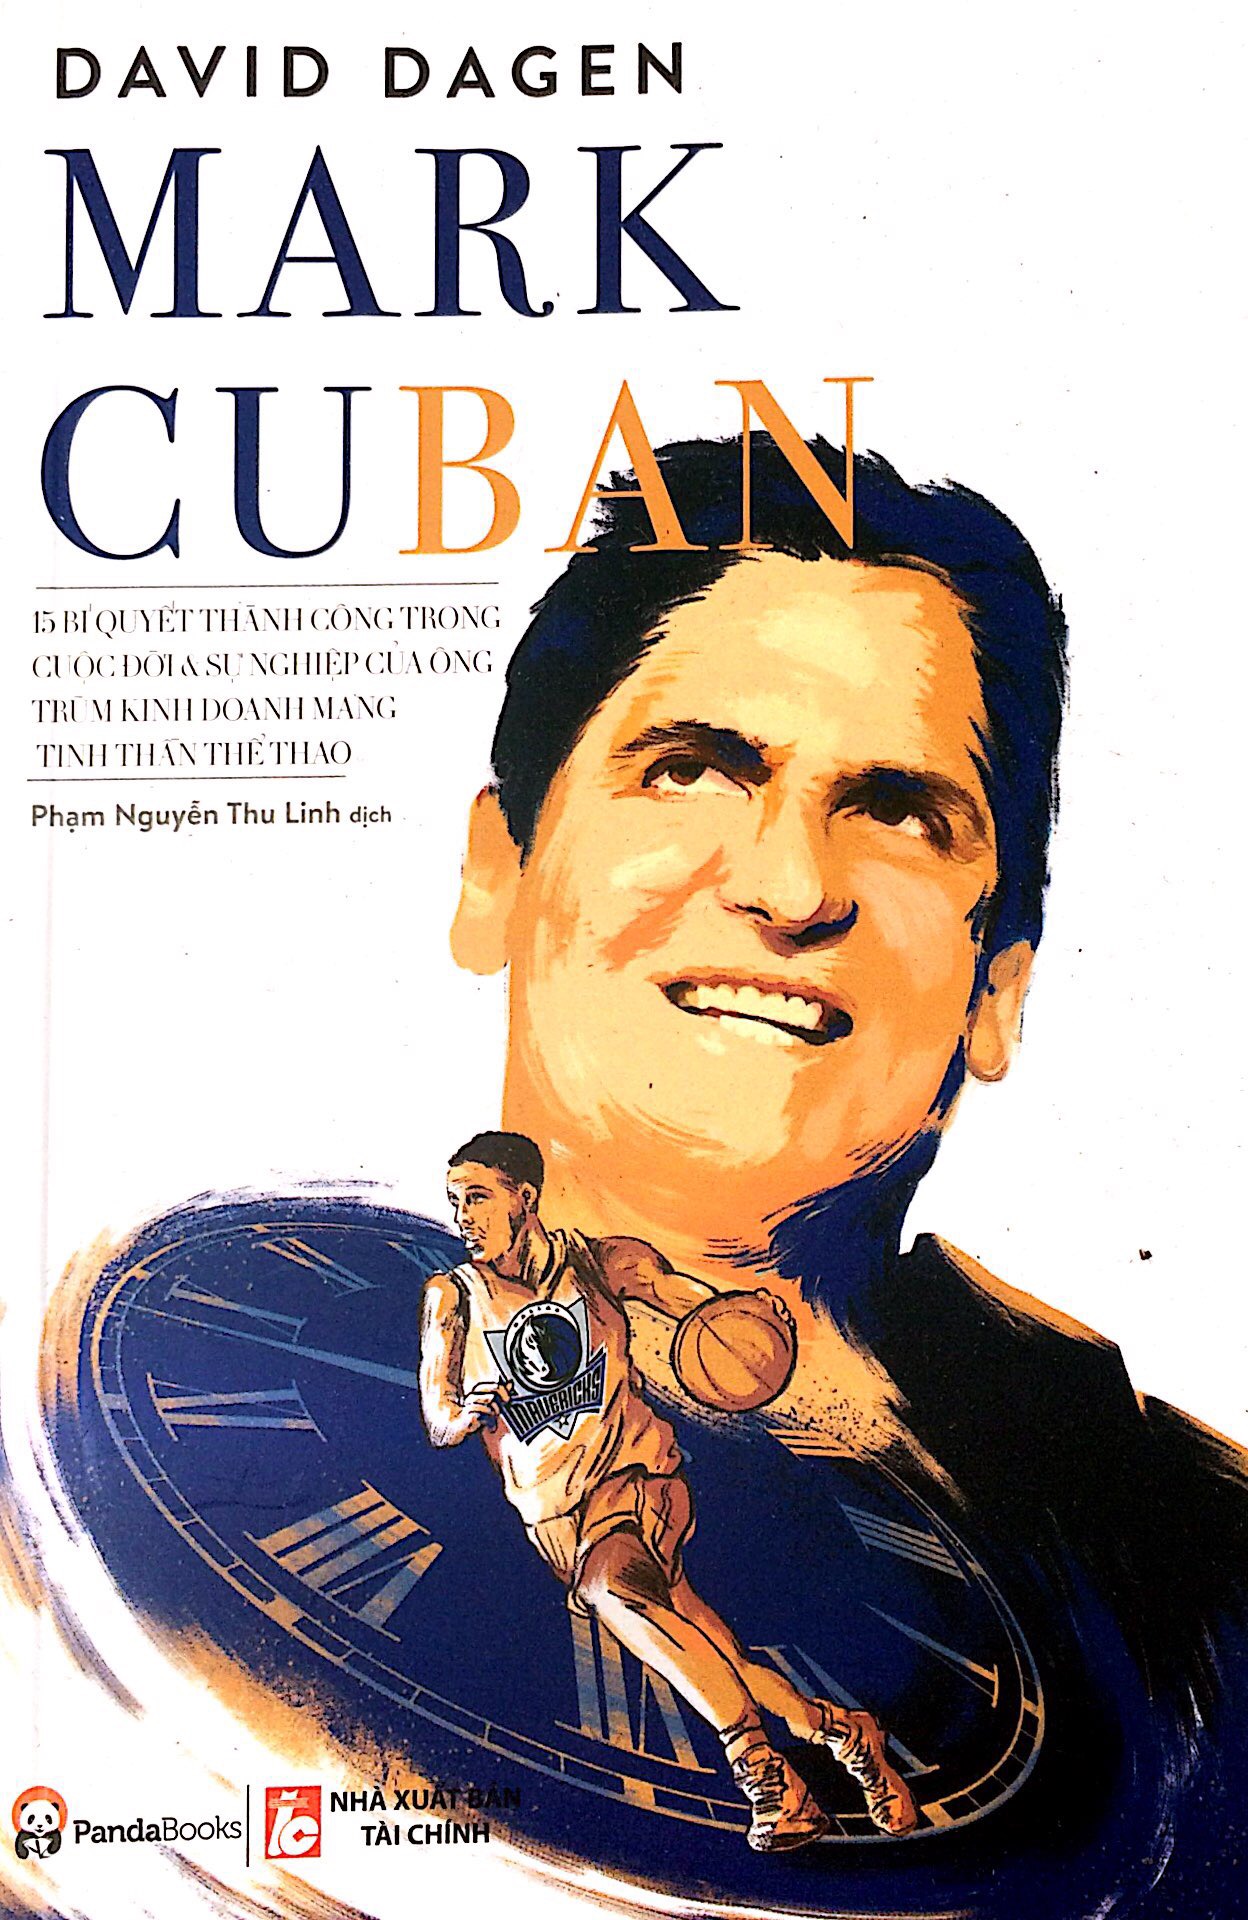 Mark Cuban - 15 Bí Quyết Thành Công Trong Cuộc Đời Và Sự Nghiệp Của Ông Trùm Kinh Doanh Mang Tinh Thần Thể Thao PDF